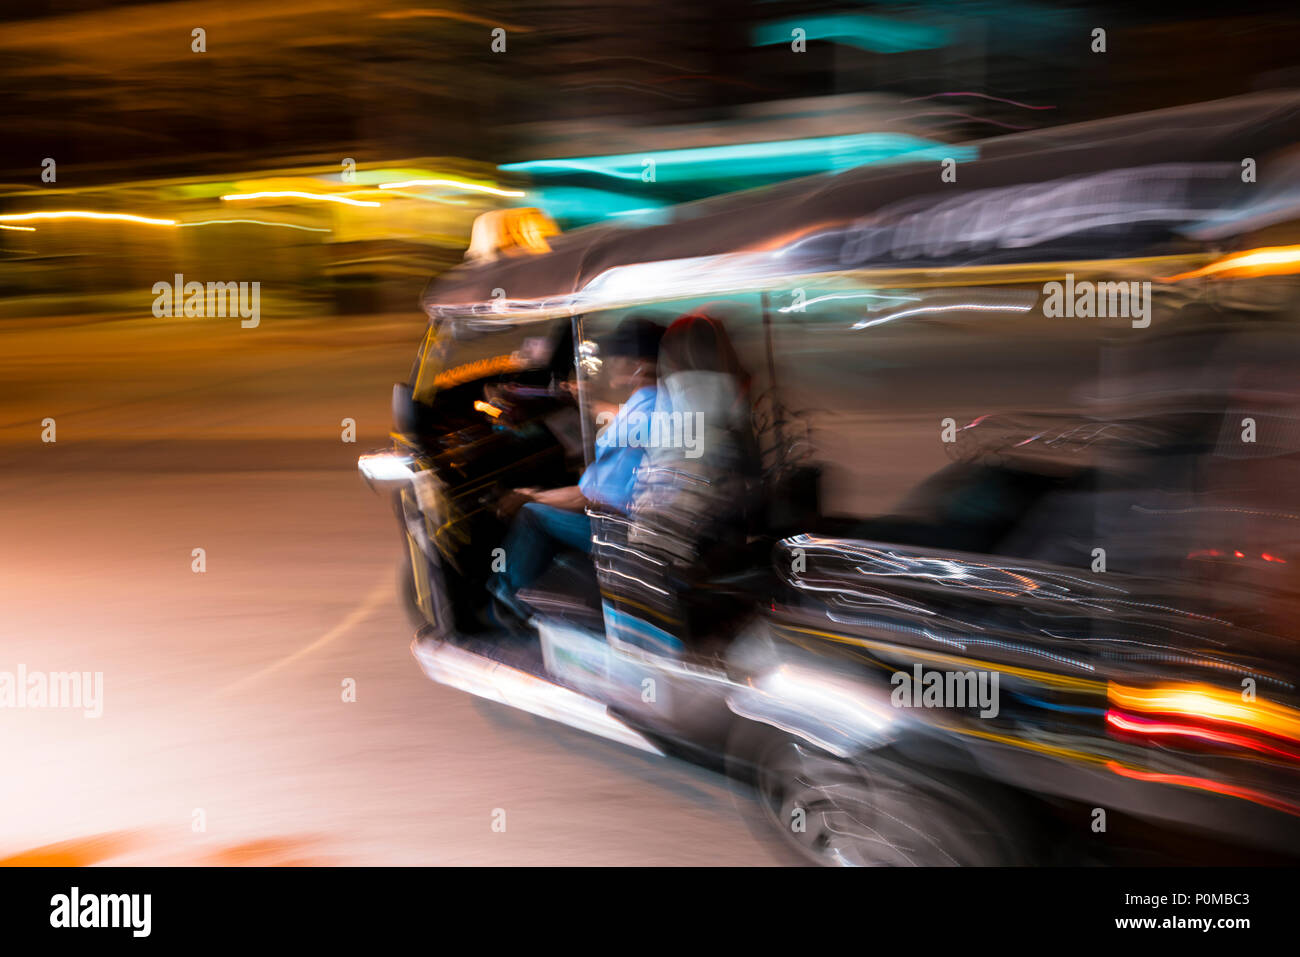 Abstrakte panning Technik schaffen Bewegung&Unschärfe eines Tuktuk taxi Drehen in der Nacht in den Straßen von Chiang Mai im Norden von Thailand links Stockfoto